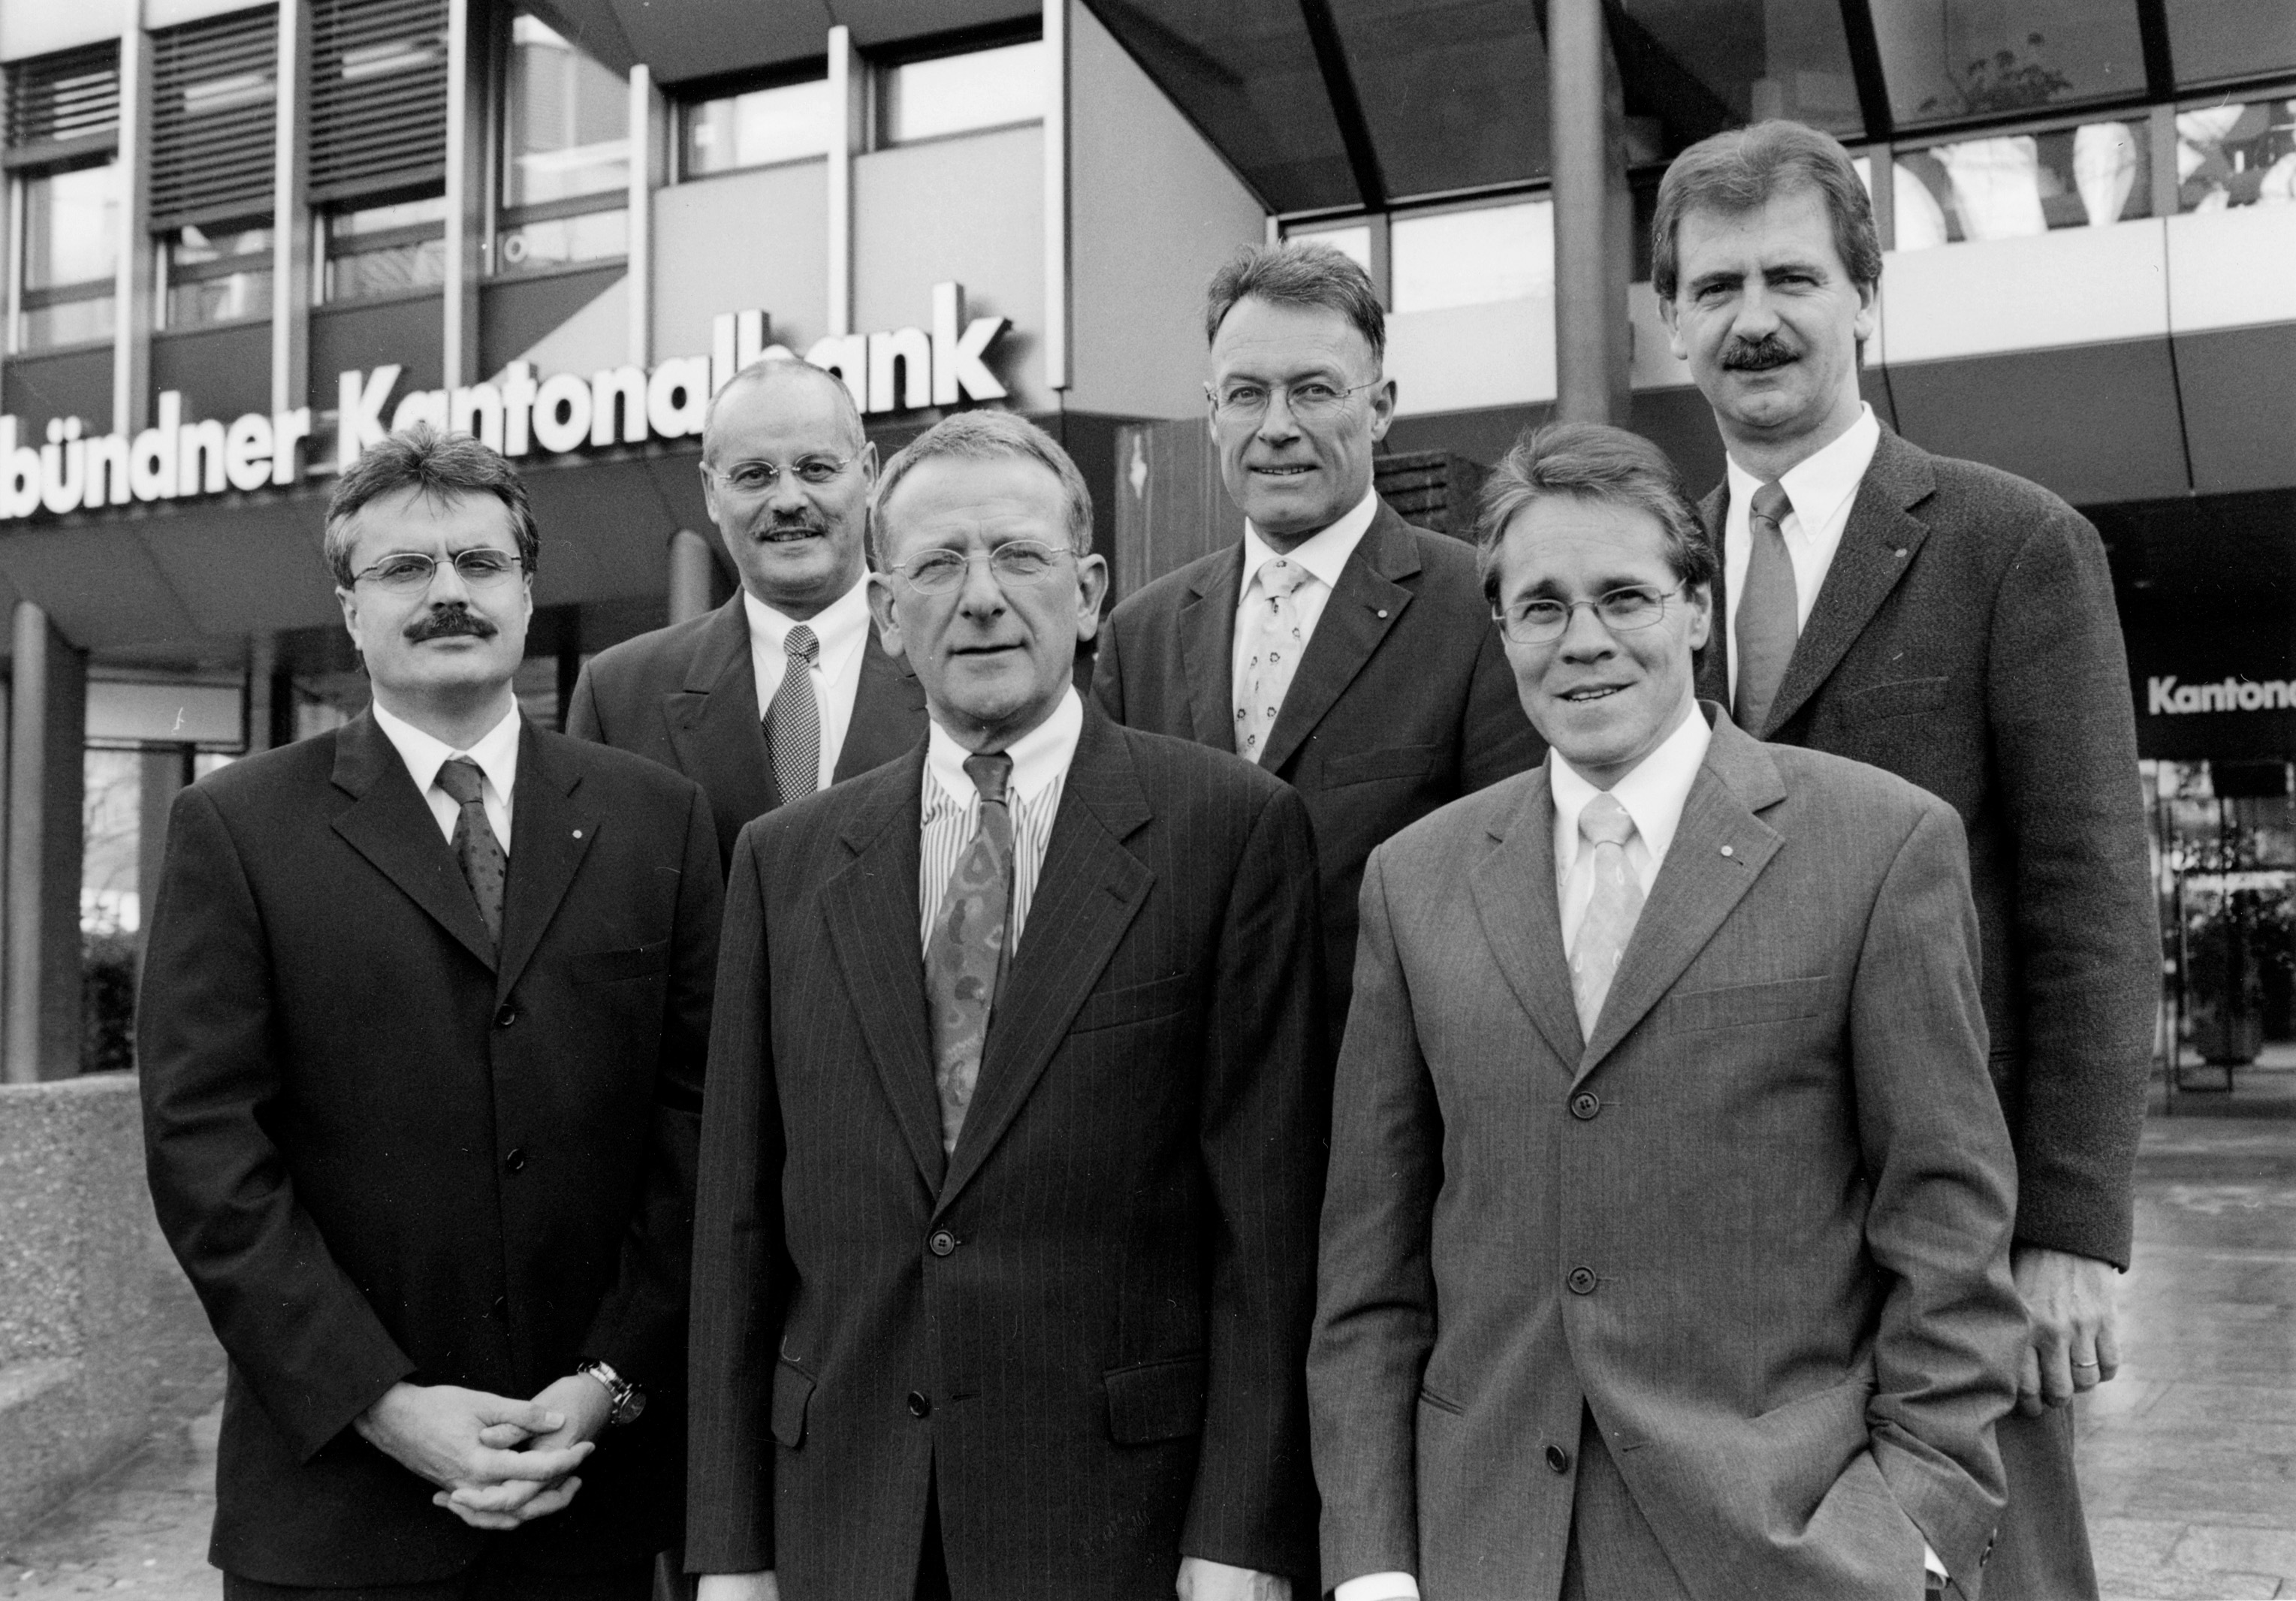 Presidenza della BCG nel 2001: Alois Vinzens, Albert Niggli, Ulrich Immler (CEO), Presidente della Banca Hans Hatz, Rico Monsch, Eduard Gasser, da sinistra a destra (Fonte delle immagini: Somedia)